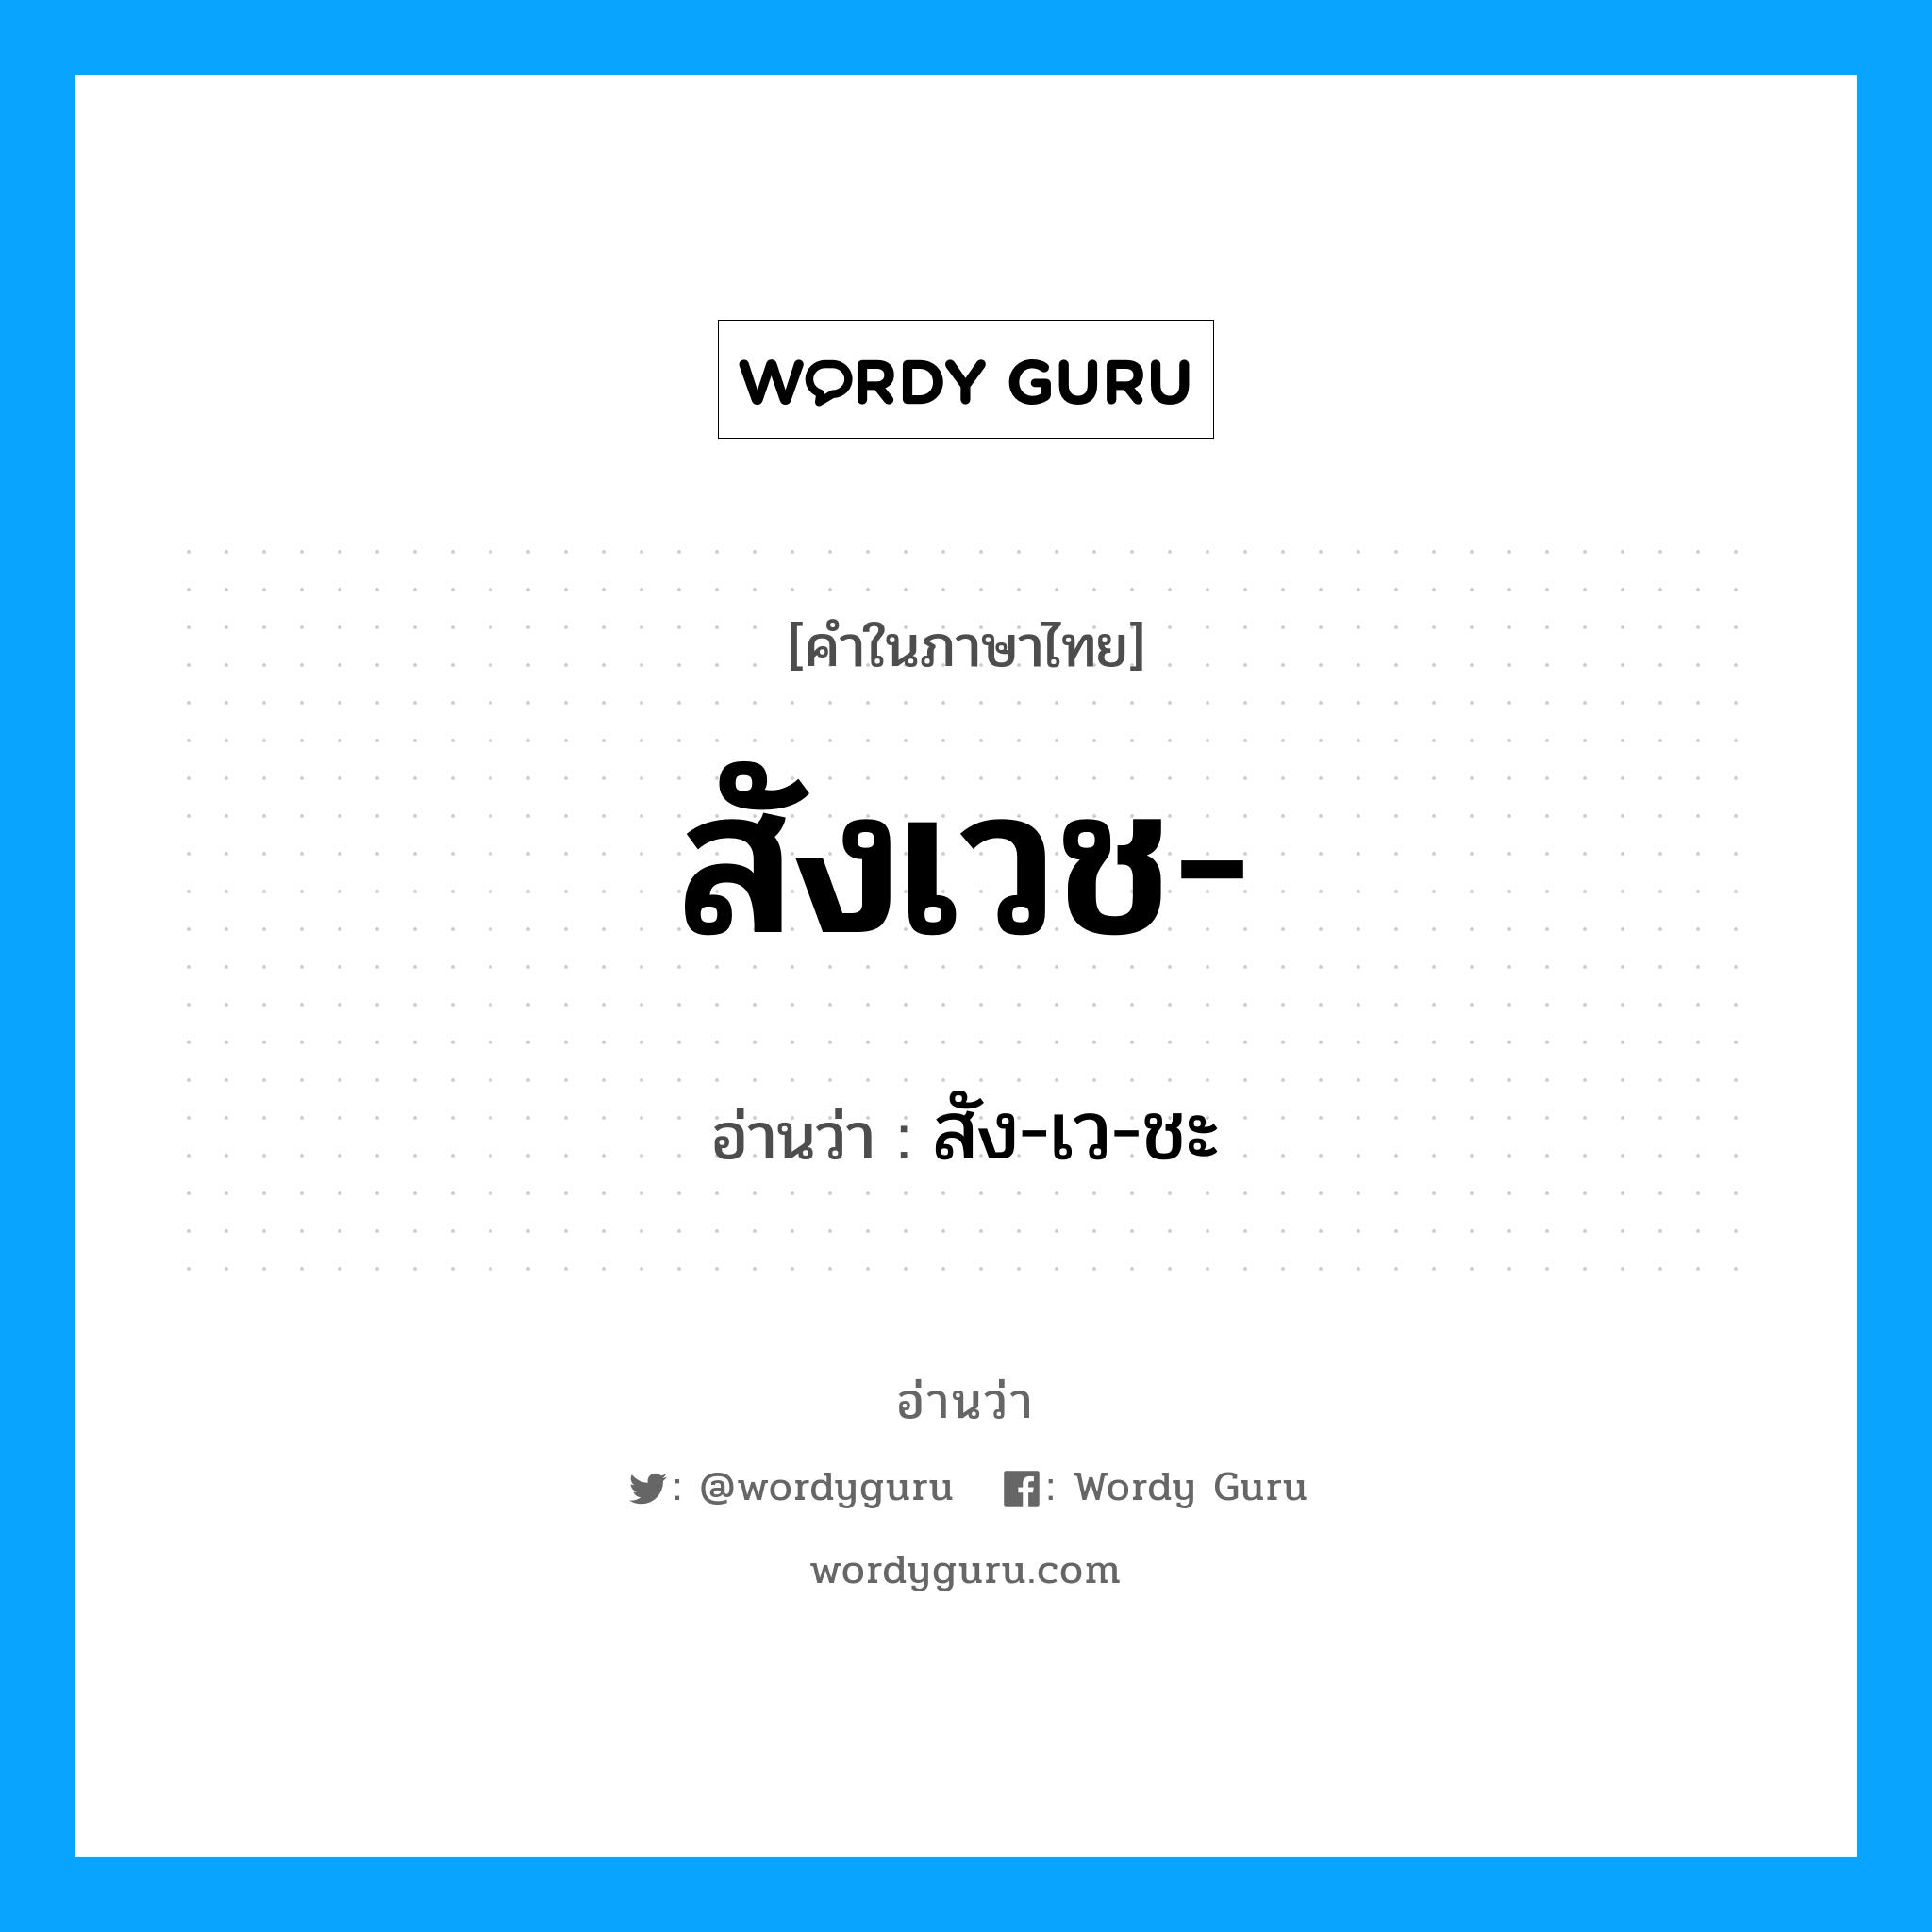 สัง-เว-ชะ เป็นคำอ่านของคำไหน?, คำในภาษาไทย สัง-เว-ชะ อ่านว่า สังเวช-